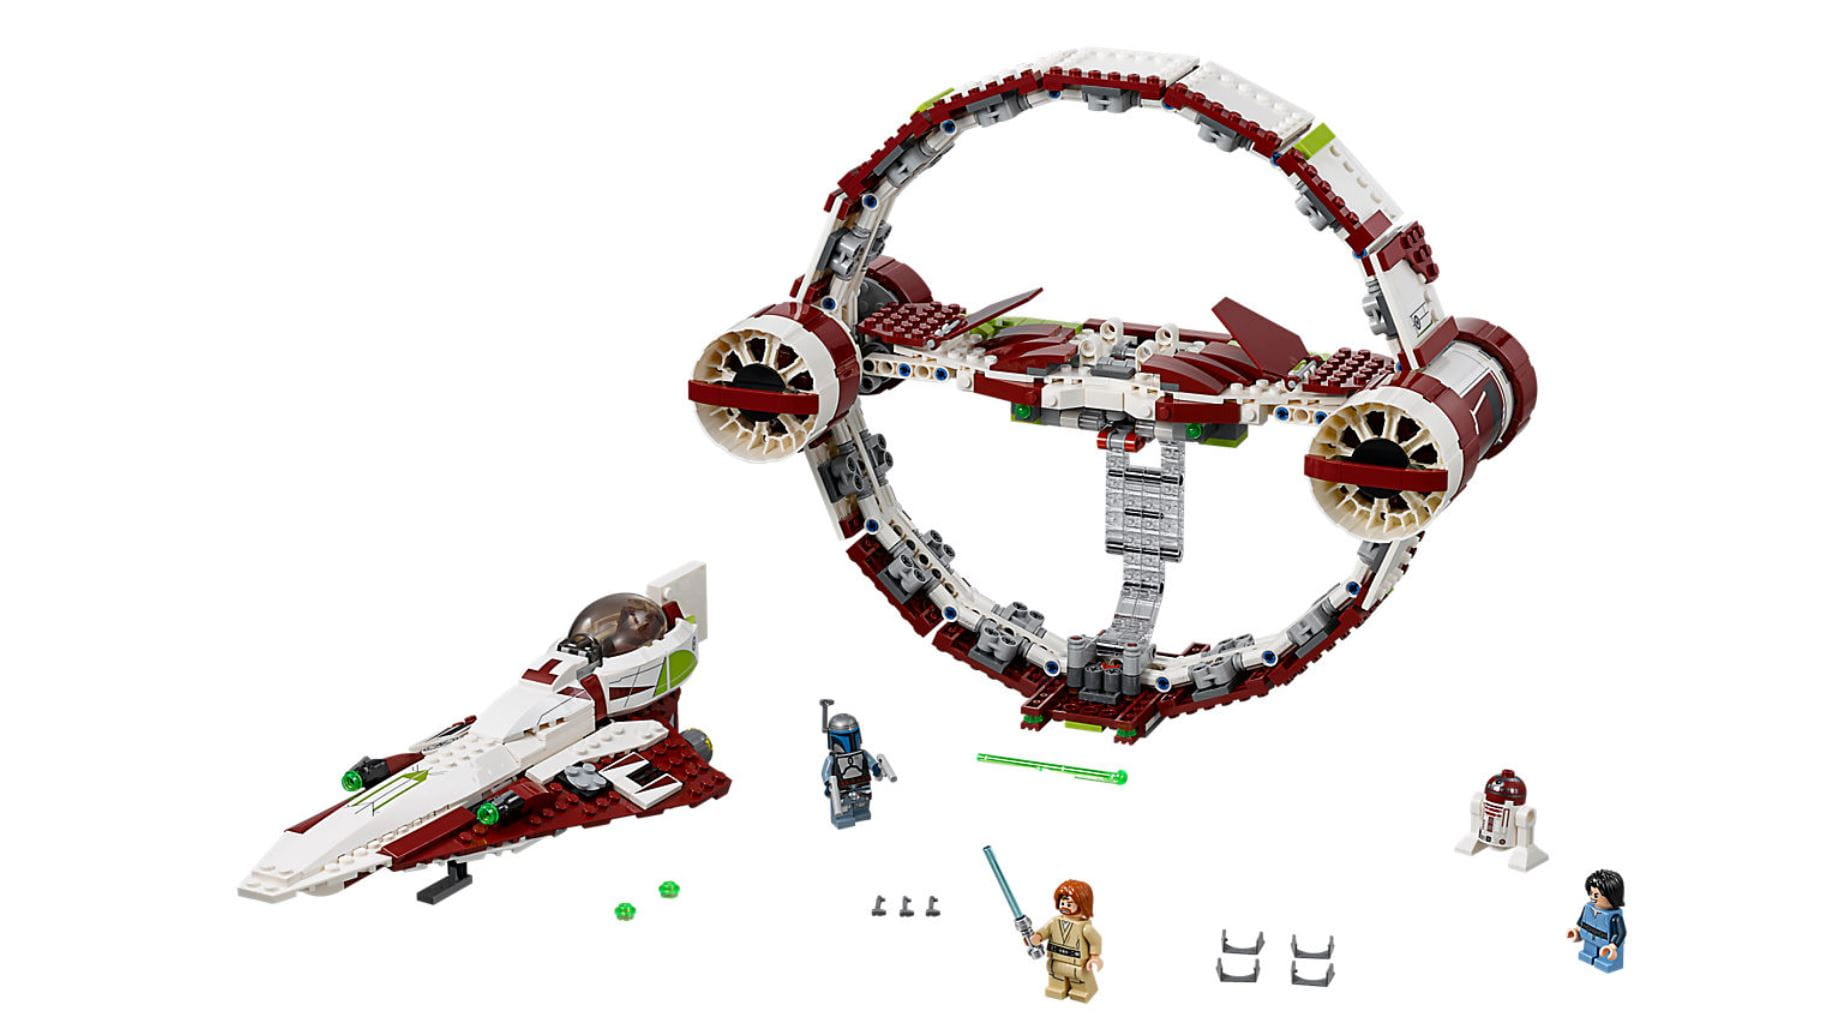 LEGO Star Wars Exklusiv Artikel Jedi Starfighter™ With Hyperdrive